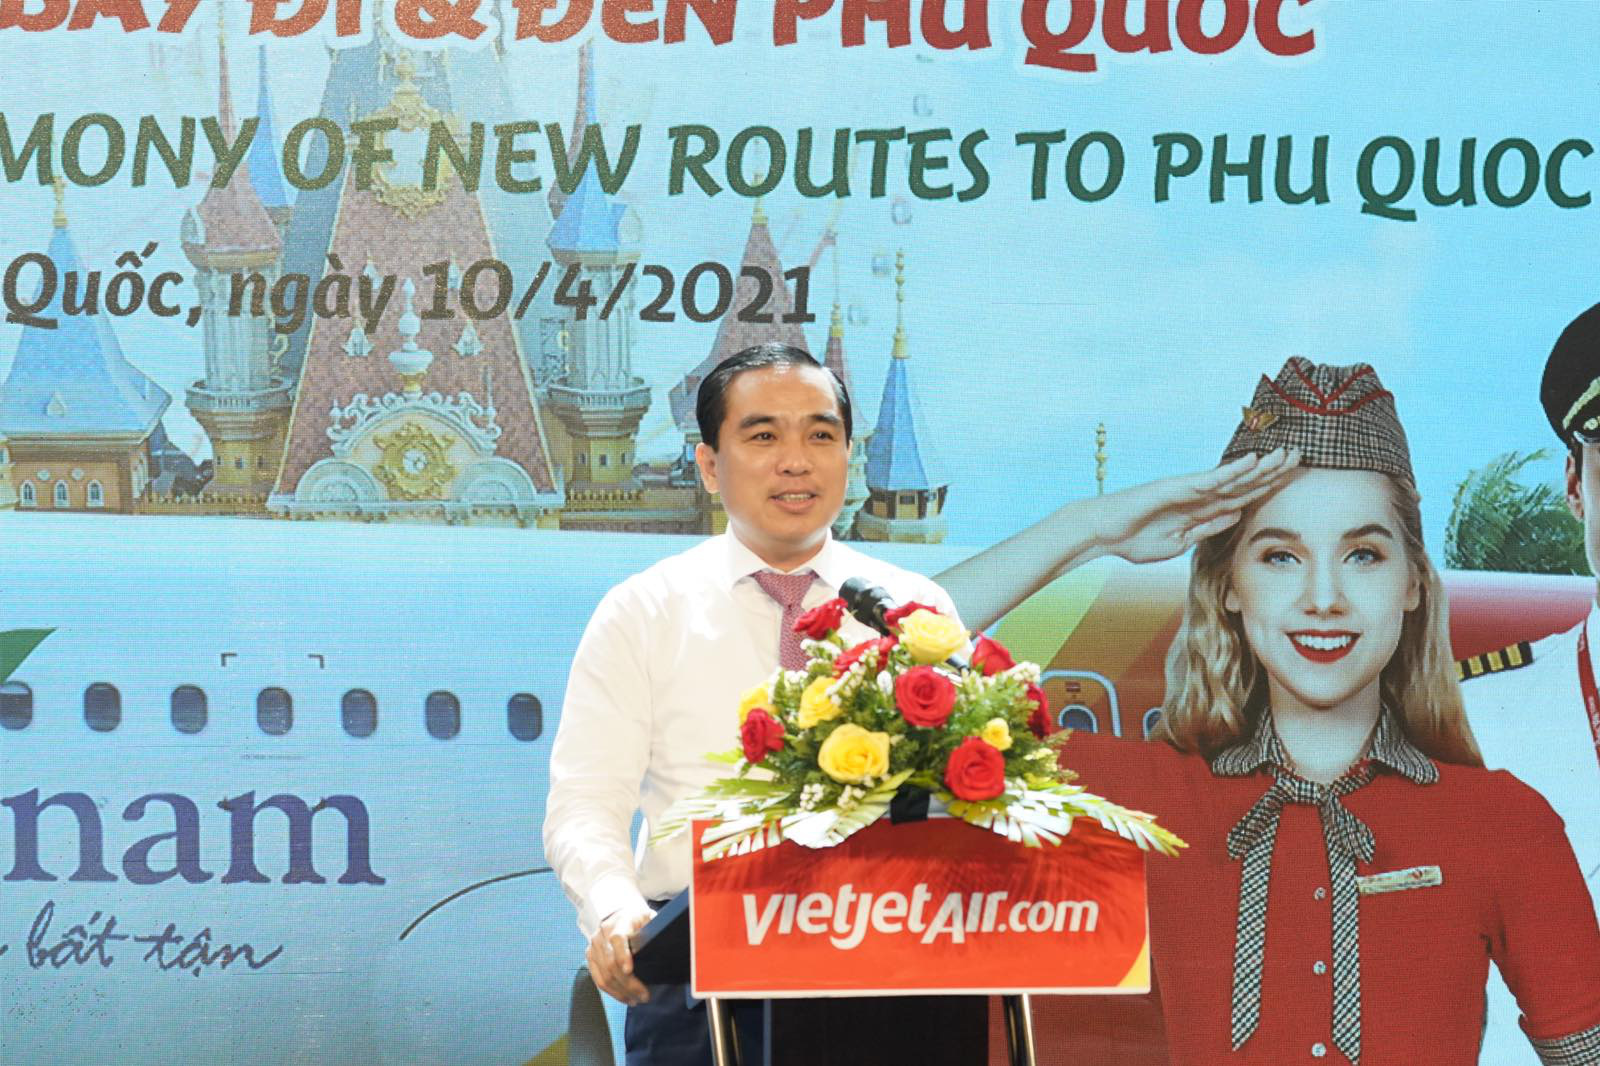 Bay từ Thanh Hoá, Nha Trang, Đà Lạt, Huế, Cần thơ tới Phú Quốc đón mùa hè sôi động - Ảnh 1.